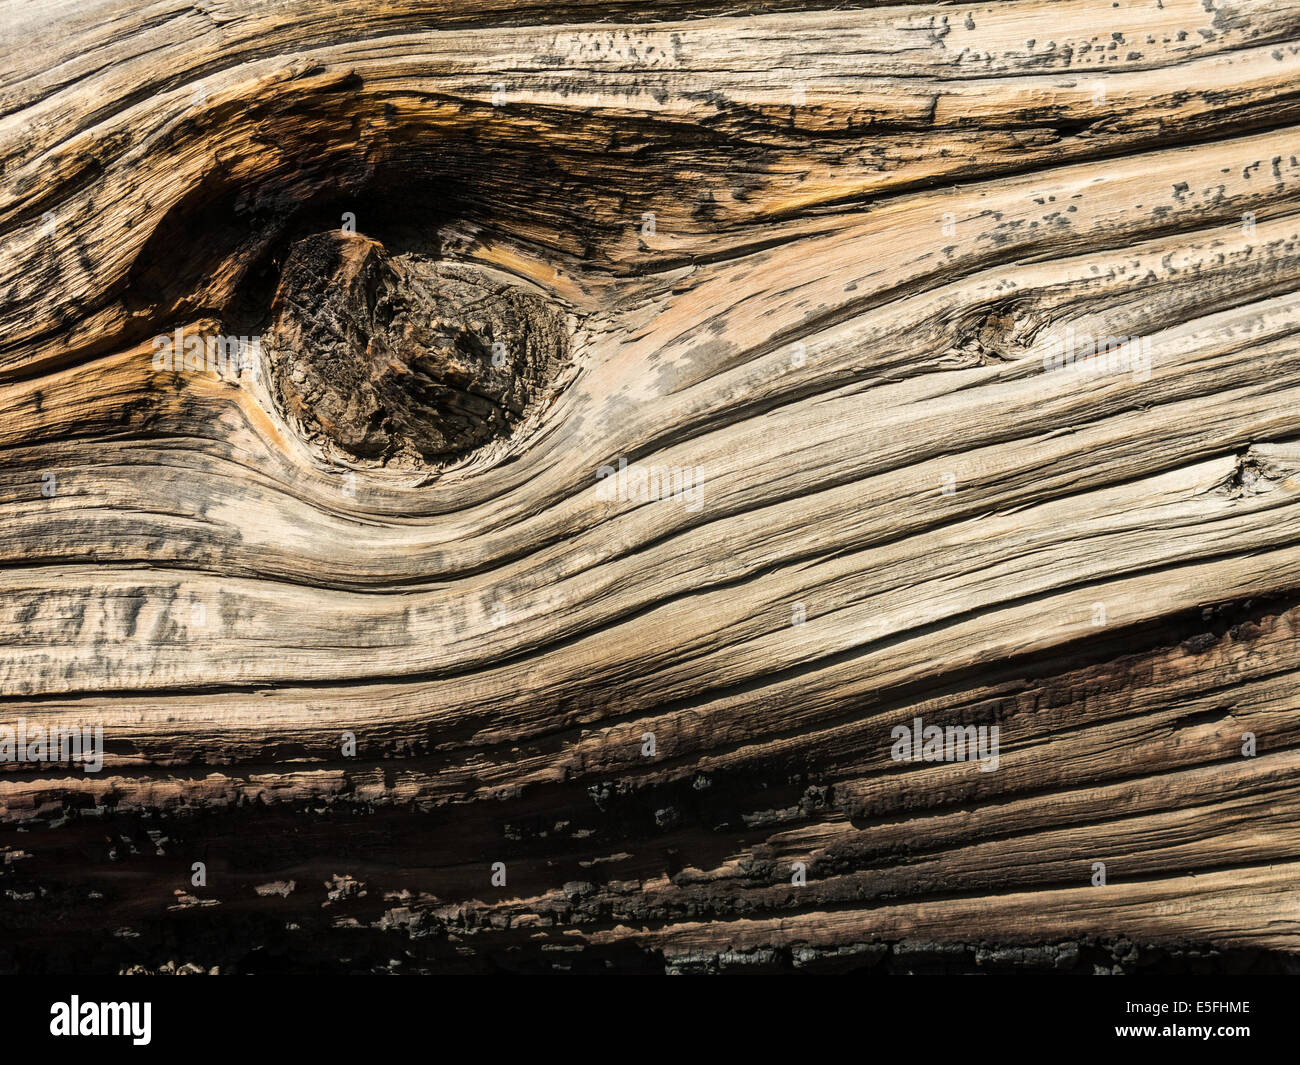 Un détail de l'écorce d'un ancient Bristlecone Pine (Pinus longaeva), dans l'Antique Bristlecone Pine Forest, Californie Banque D'Images